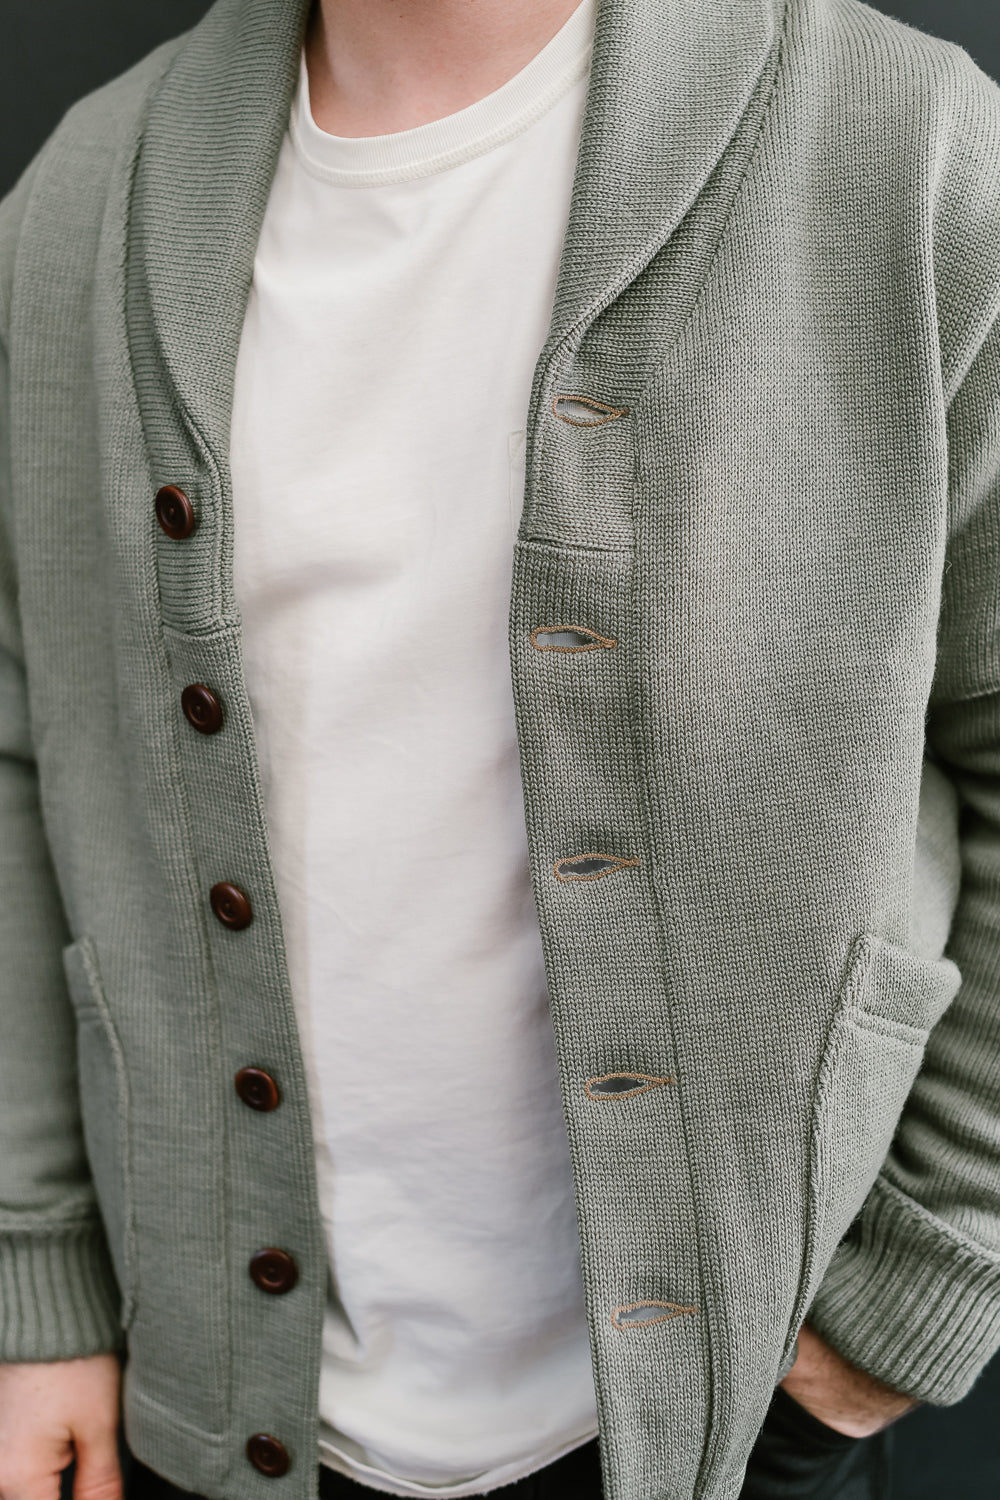 James Dant x Dehen - Shawl Sweater Coat 2.0 - Sage, Field Tan